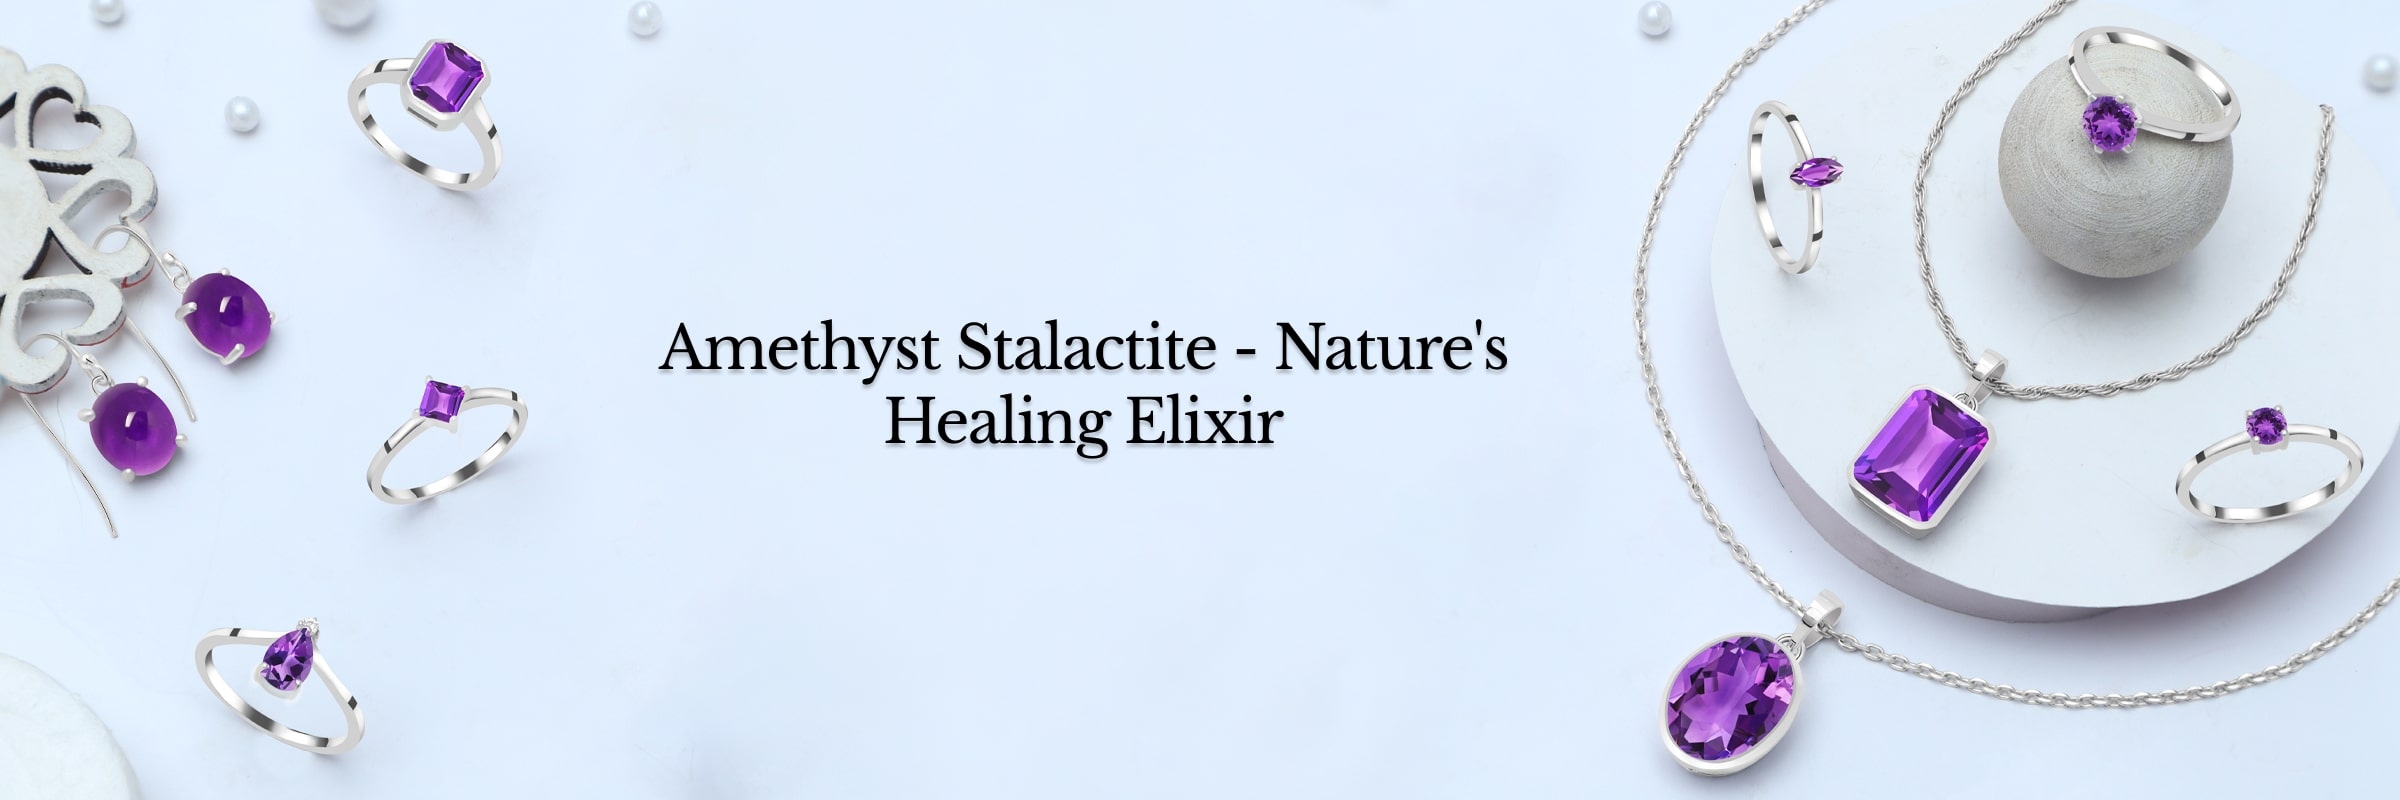 Healing Properties of Amethyst Stalactite